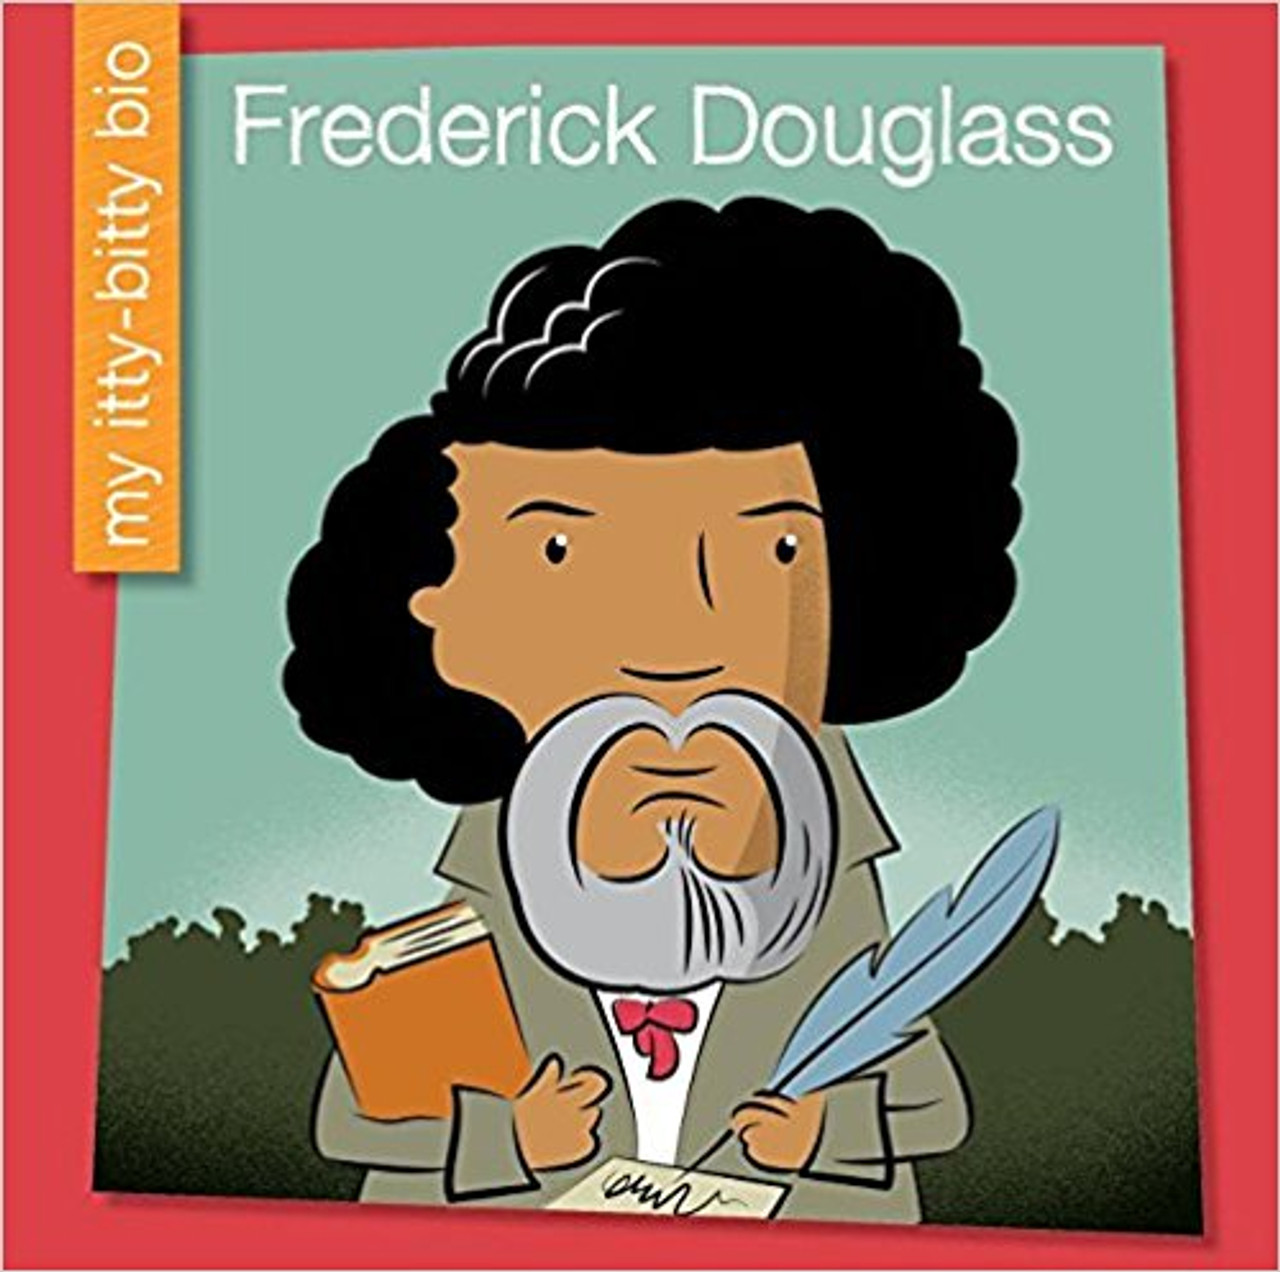 Frederick Douglass by Emma E Haldy (My Itty Bitty Bio)